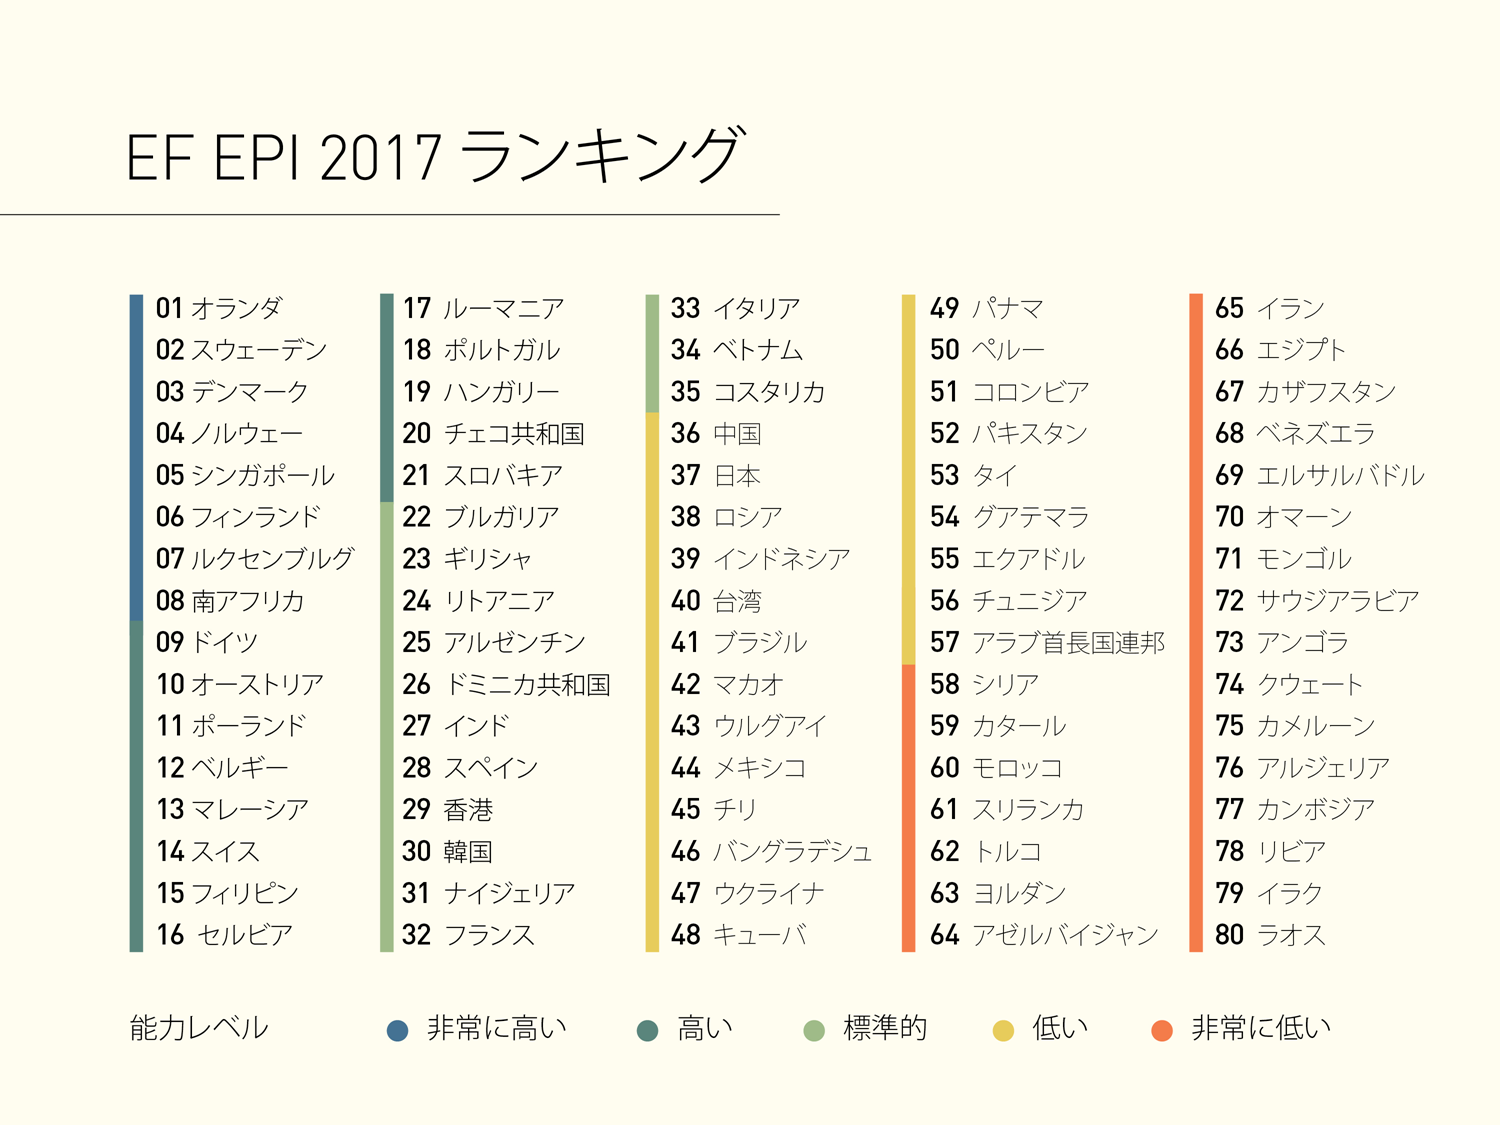 英語能力 日本は80カ国中37位と依然として低迷 Ict教育ニュース